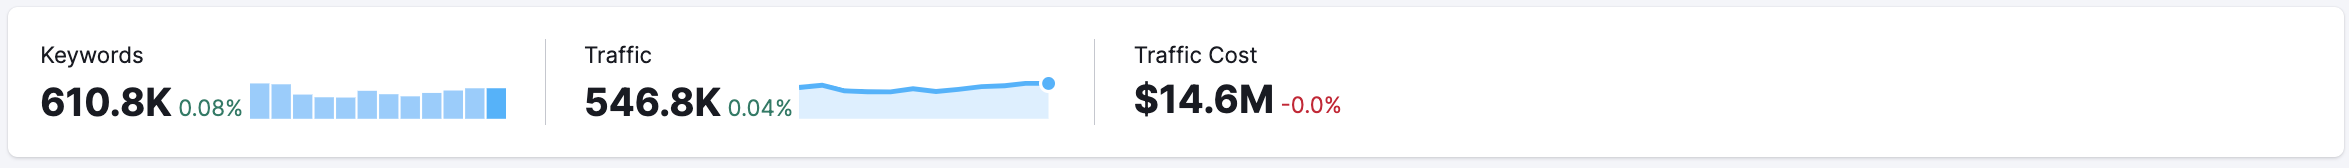 Ejemplo de métricas: Palabras clave, Tráfico y Coste de tráfico. 